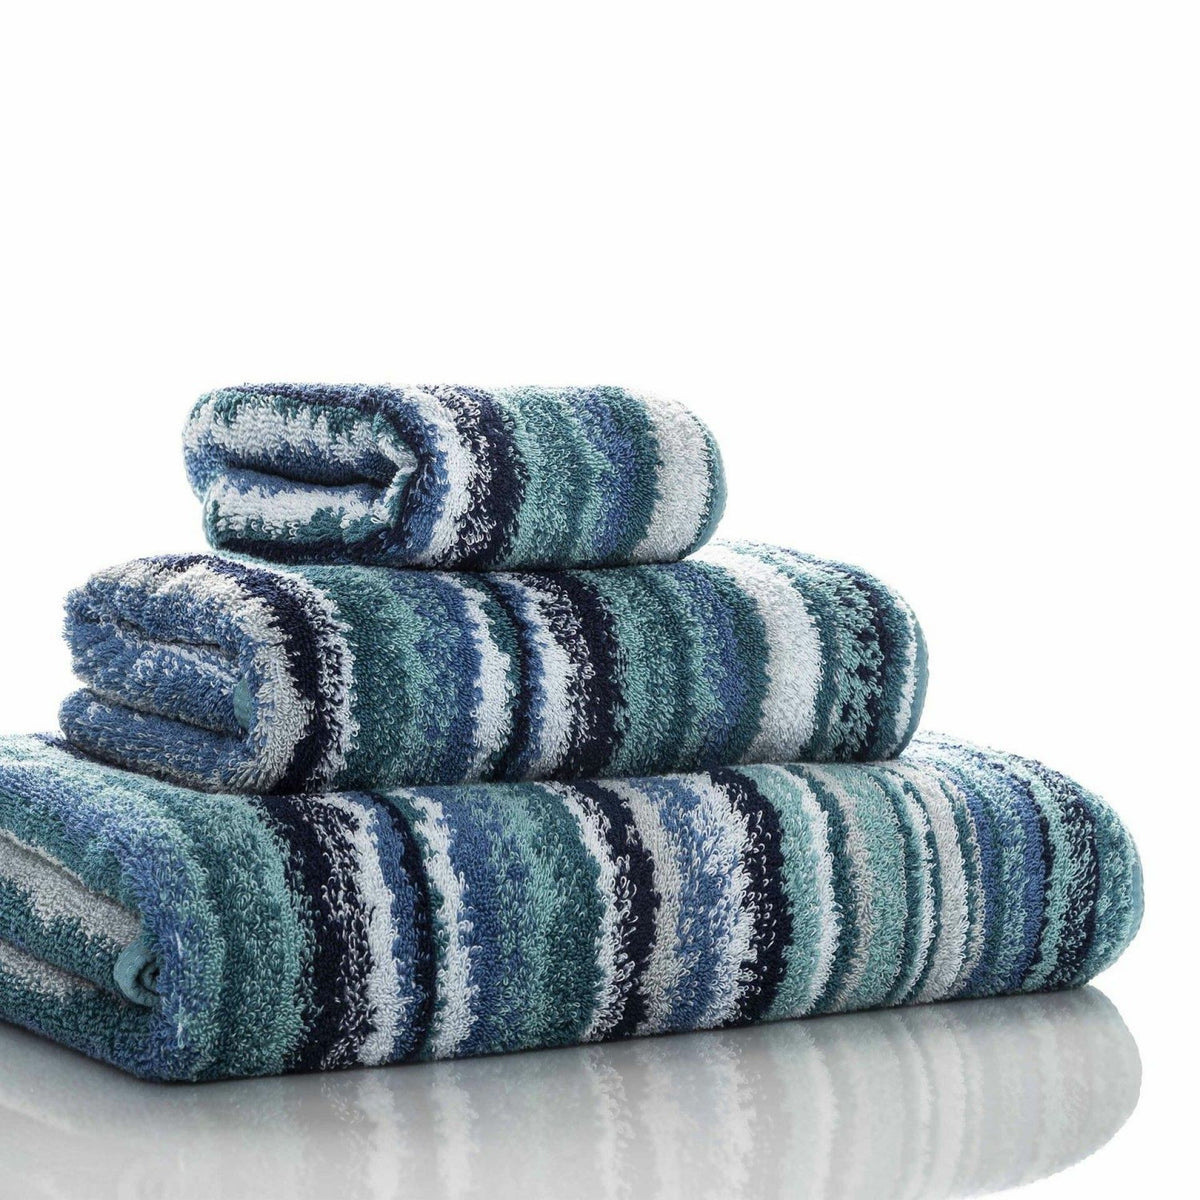 Graccioza Venice Bath Towels and Rugs Slanted Multi/Baltic Fine Linens